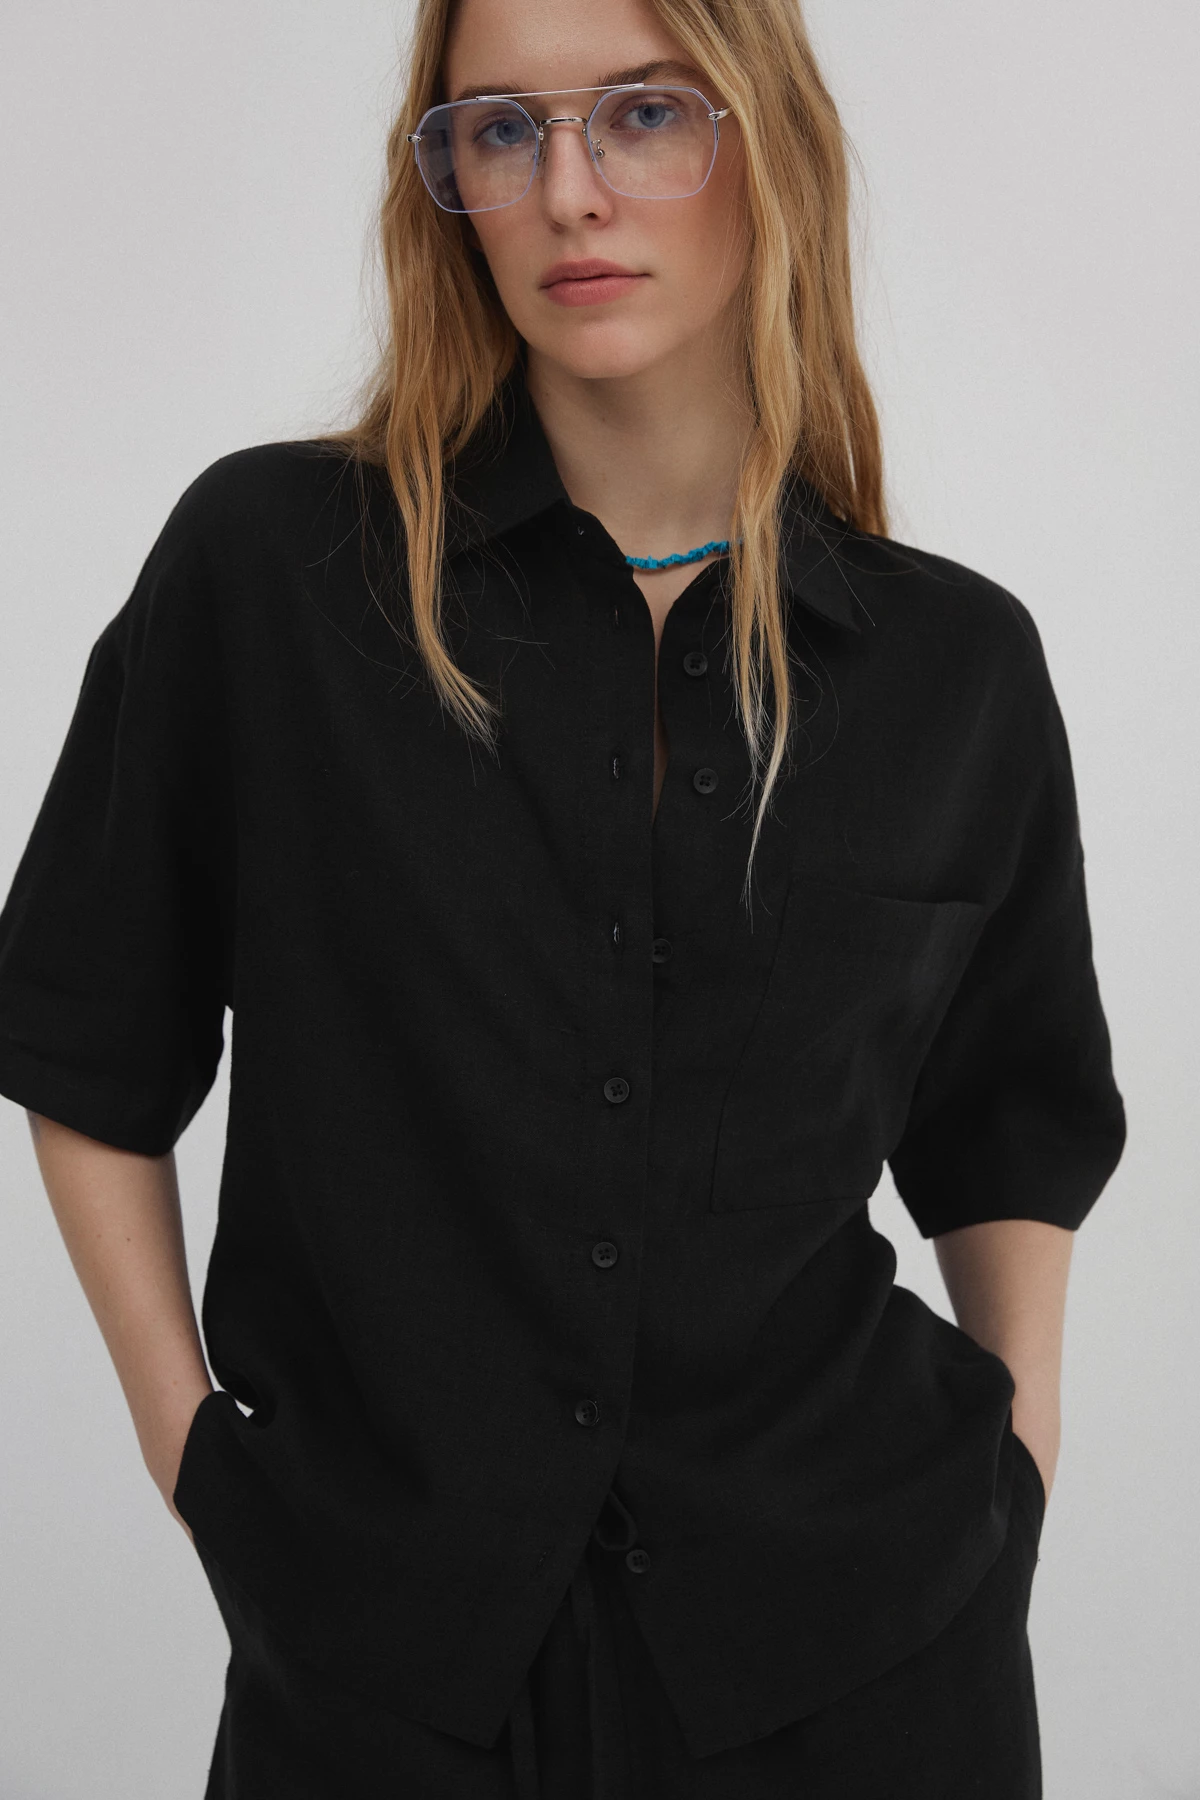 Чорна сорочка з коротким рукавом з 100% льону, фото 2